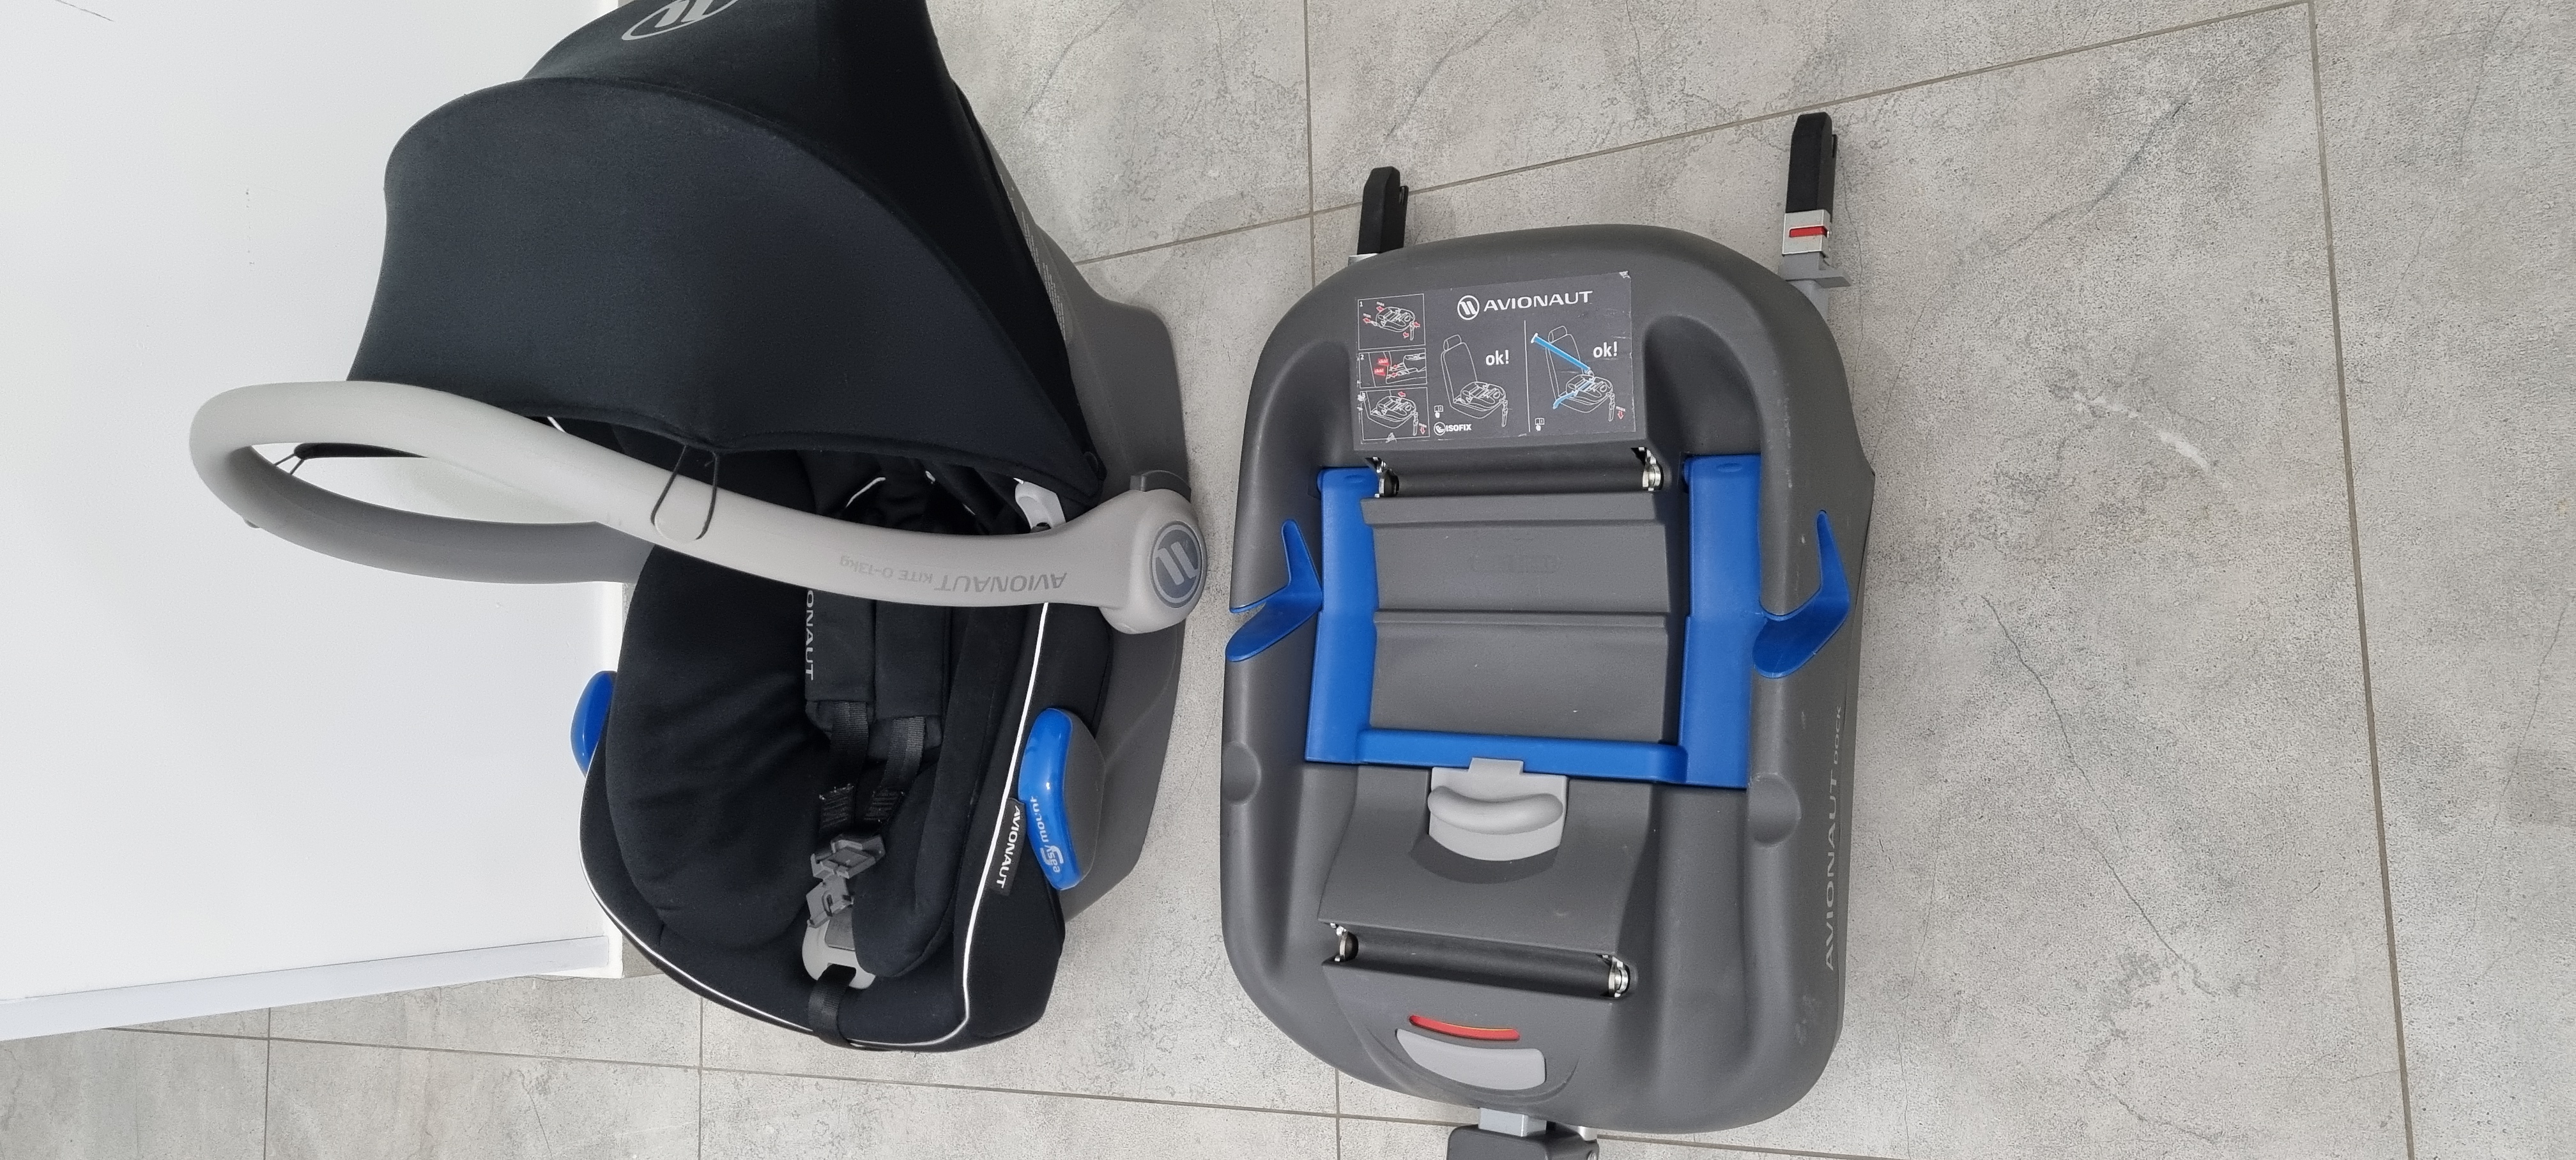 תמונה 1 ,סלקל Avionaut+איזופיקס לרכב למכירה בלוד לתינוק ולילד  אביזרי בטיחות